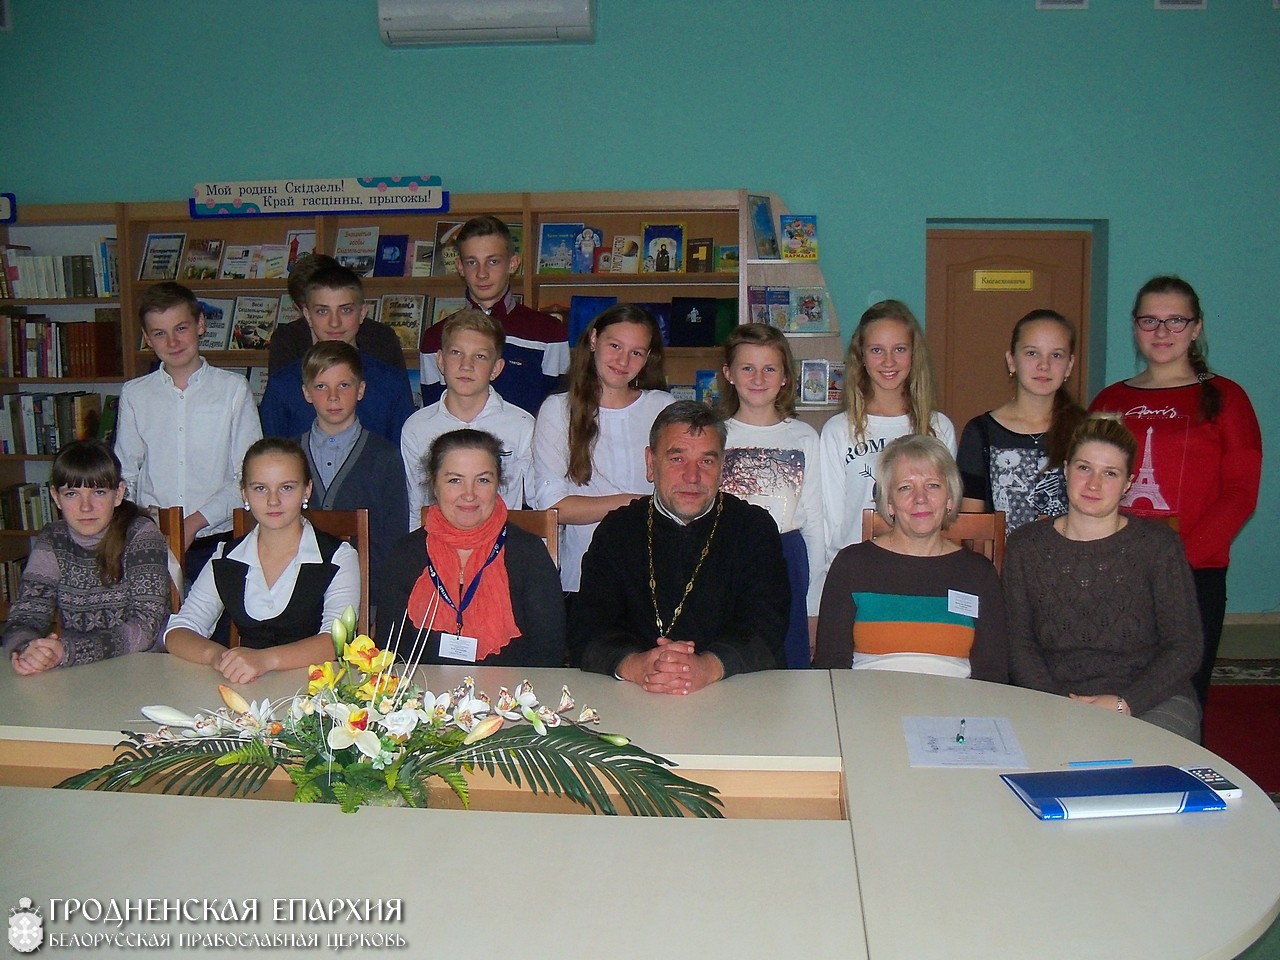 22 октября 2015 года. В библиотеке города Скиделя состоялась встреча учащихся школы №1 со священником